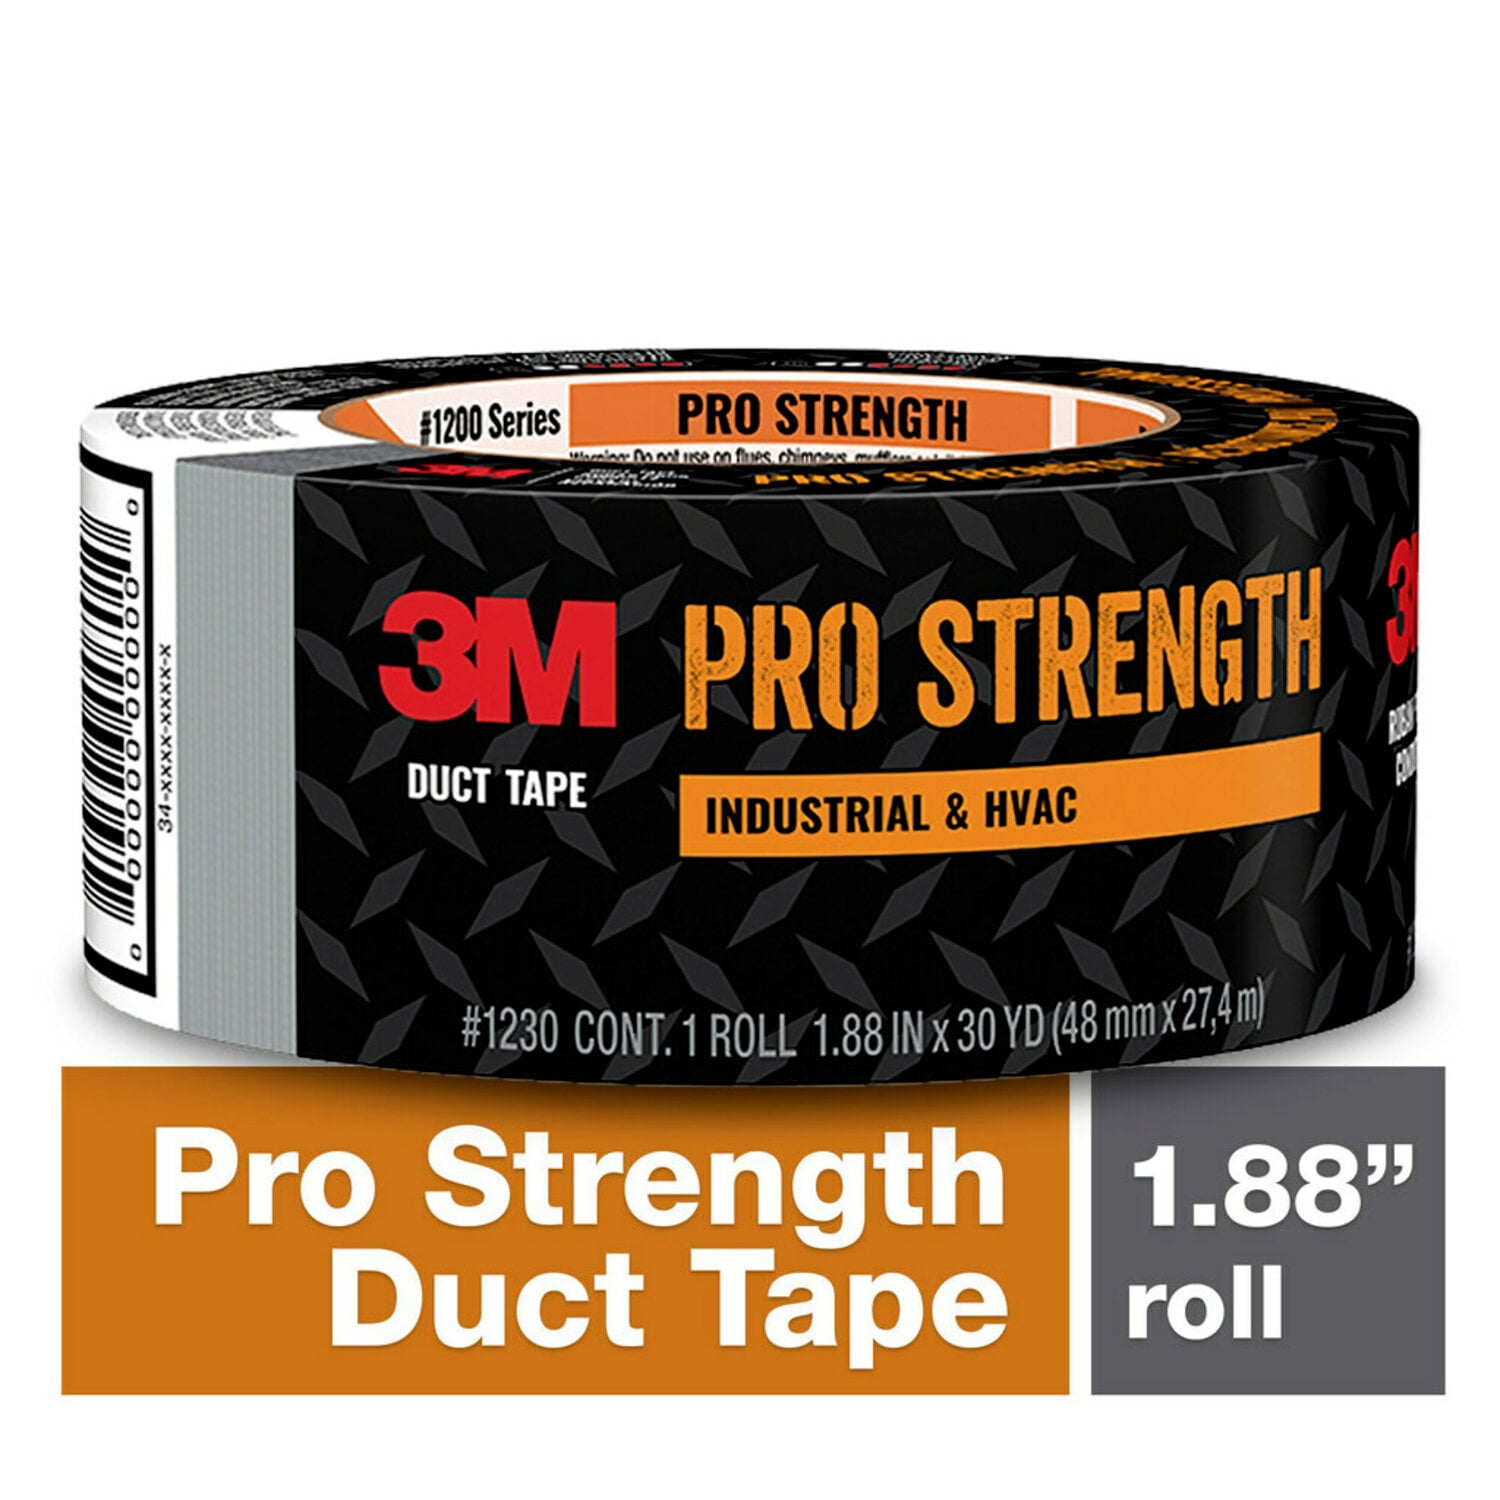 7000127026 - 3M Pro Strength Duct Tape 1230-A, 1.88 in x 30 yd (48.0 mm x 27.4 m) 24
rls/cs